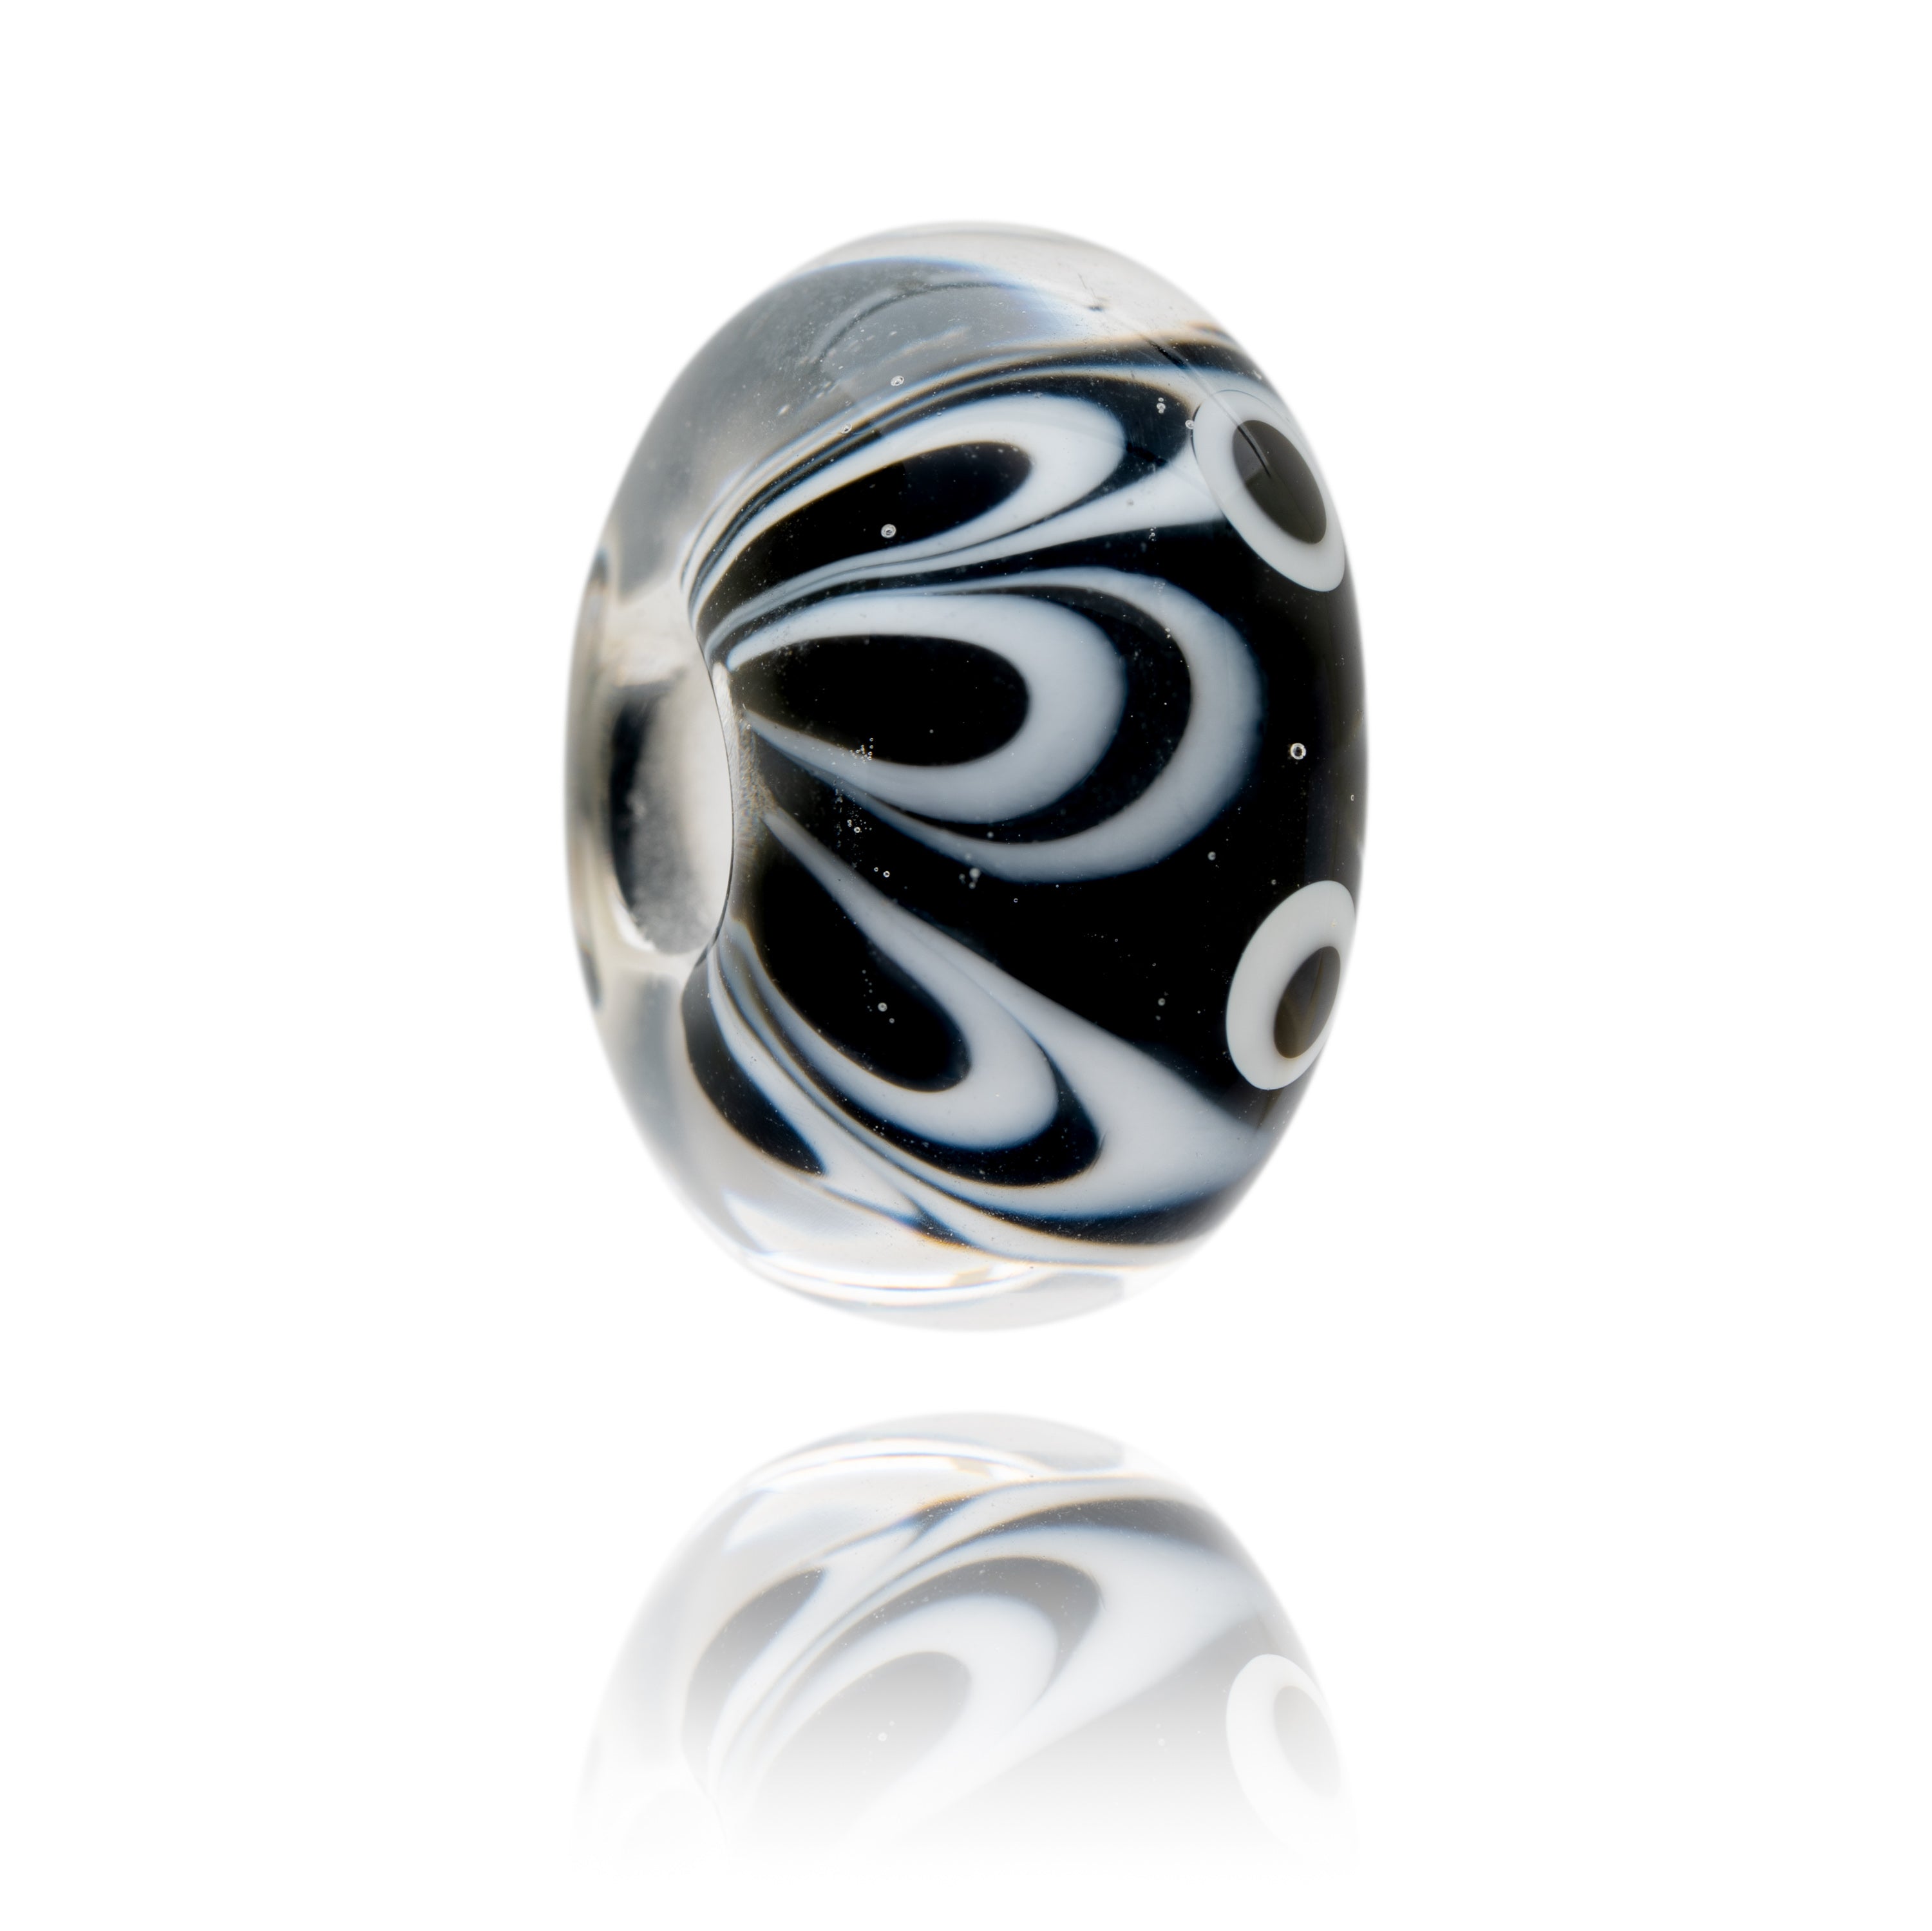 Black and white glass bead representing Nalu 2024.